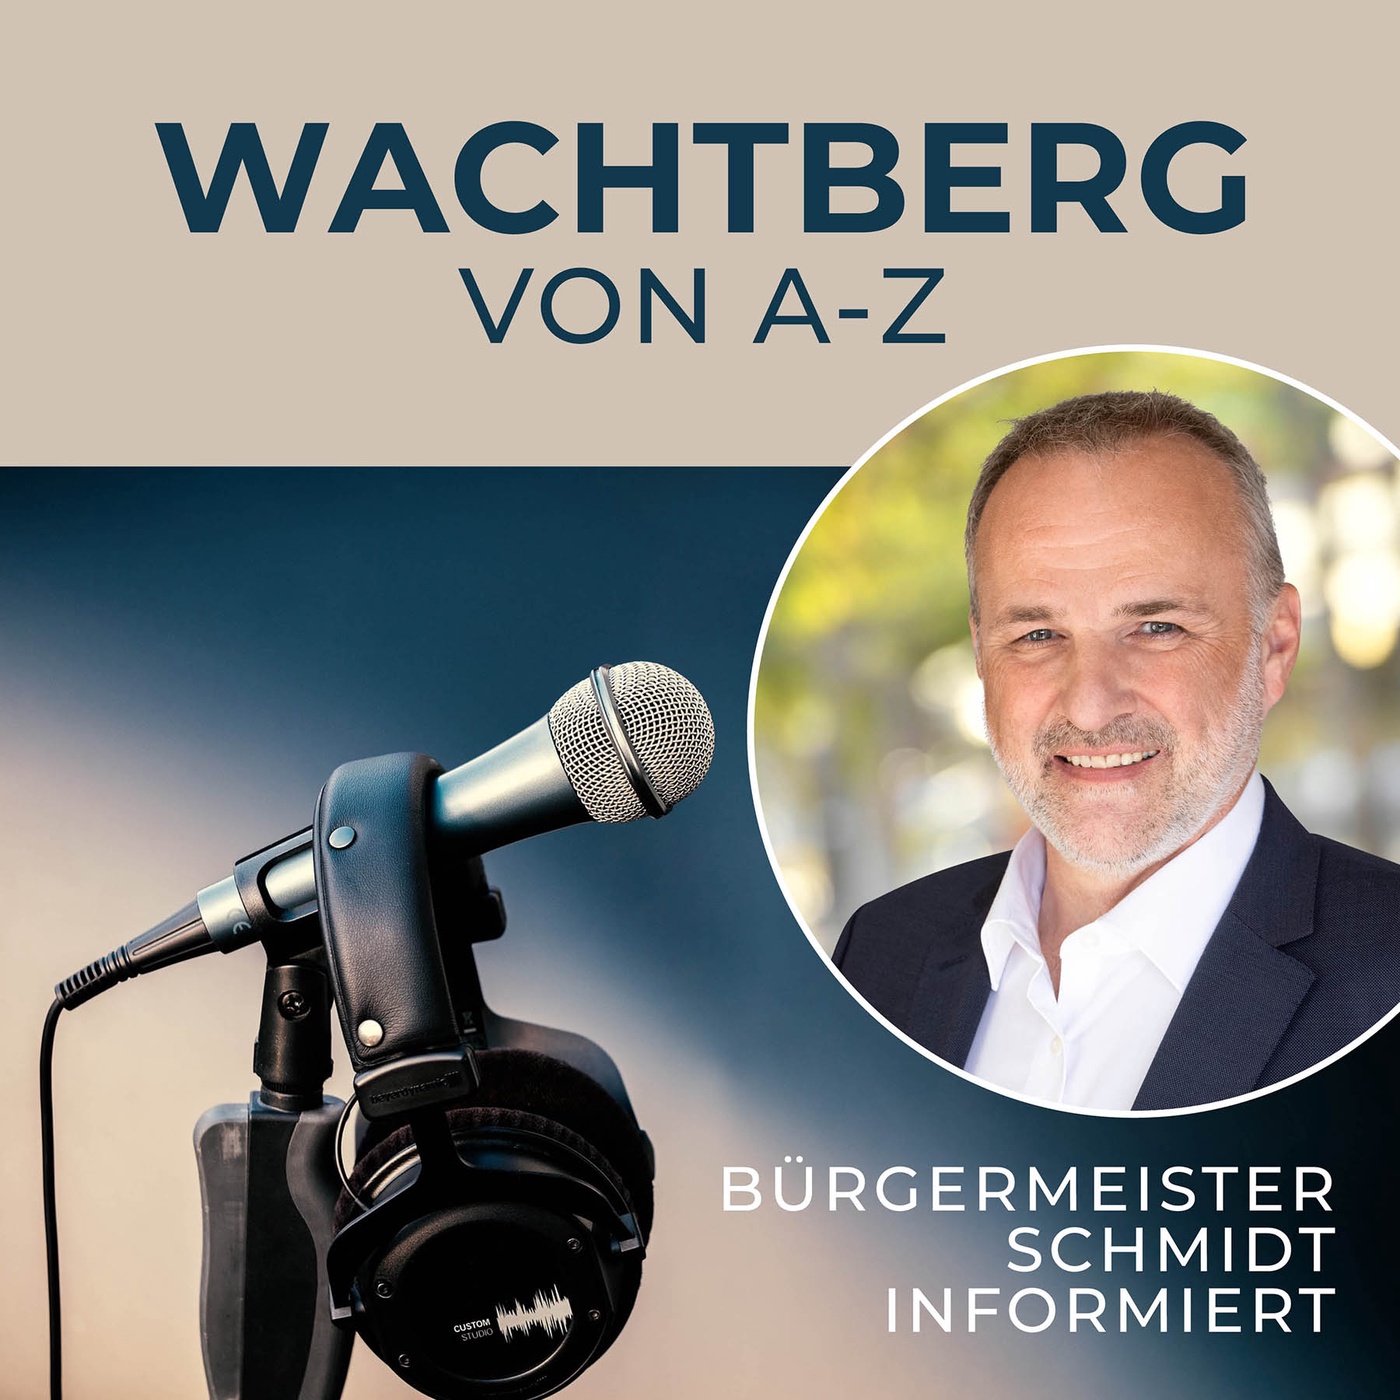 Wachtberg von A-Z - Bürgermeister Schmidt informiert